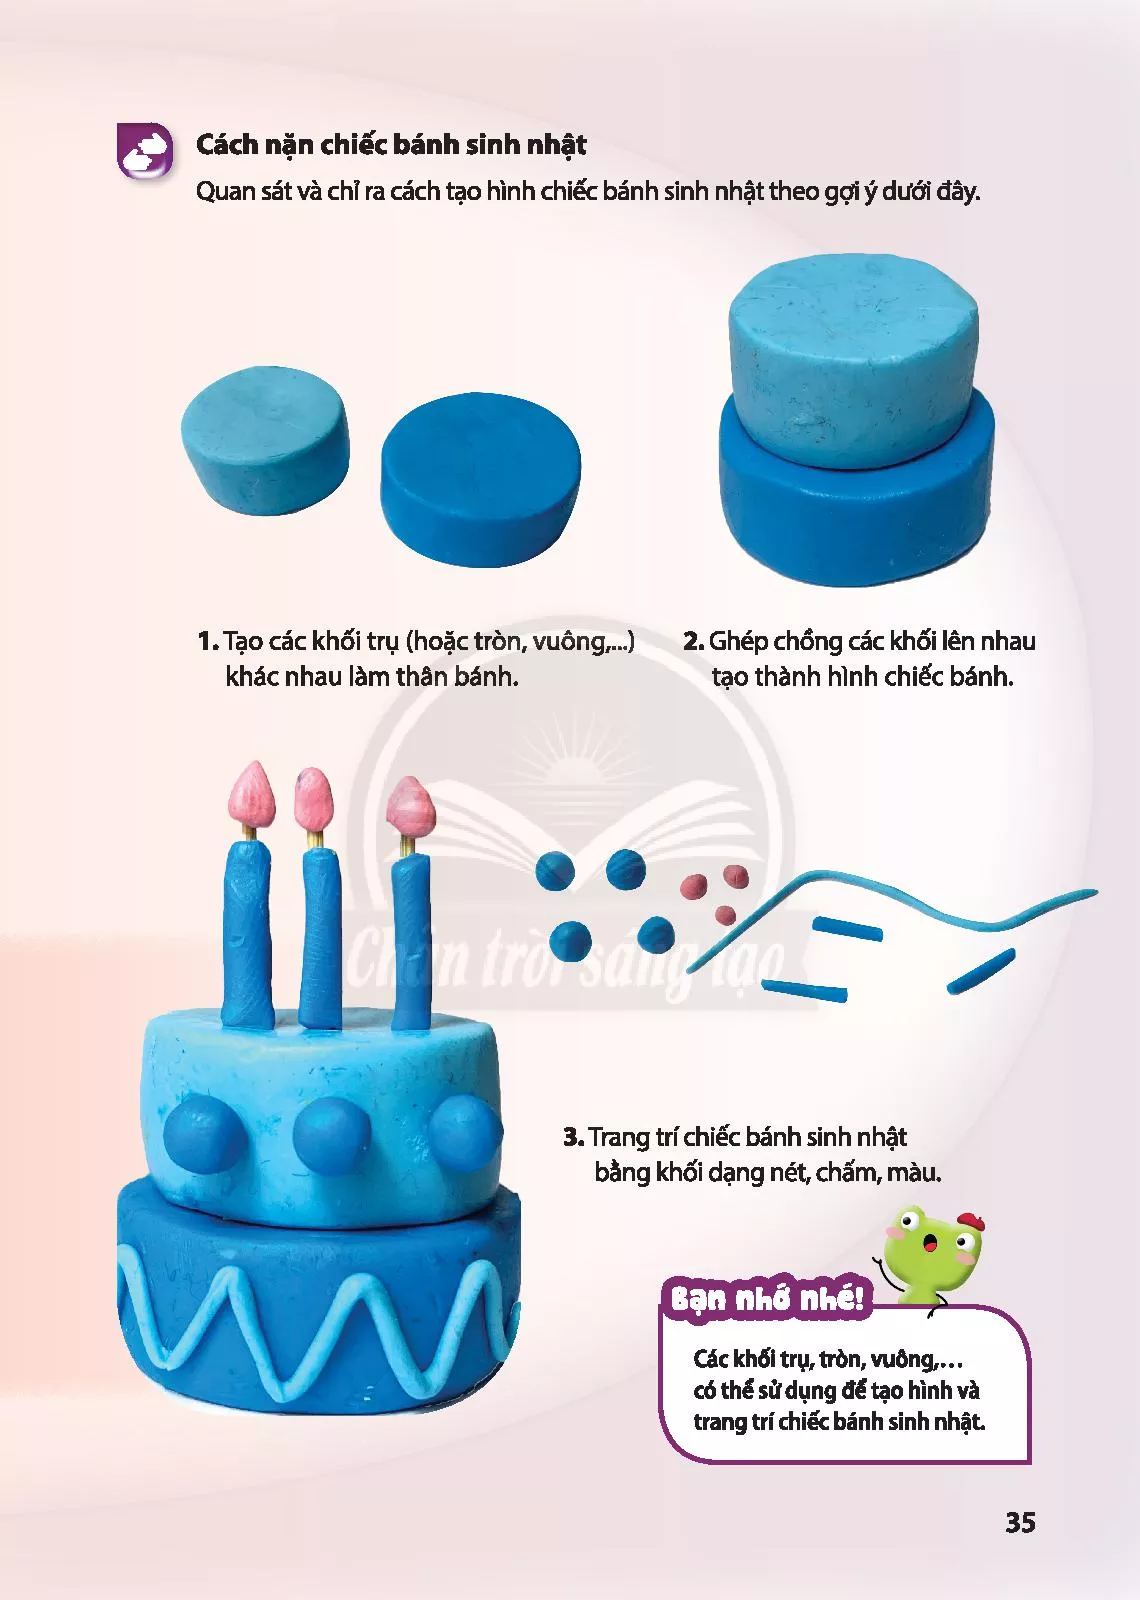 Bài 2: Chiếc bánh sinh nhật